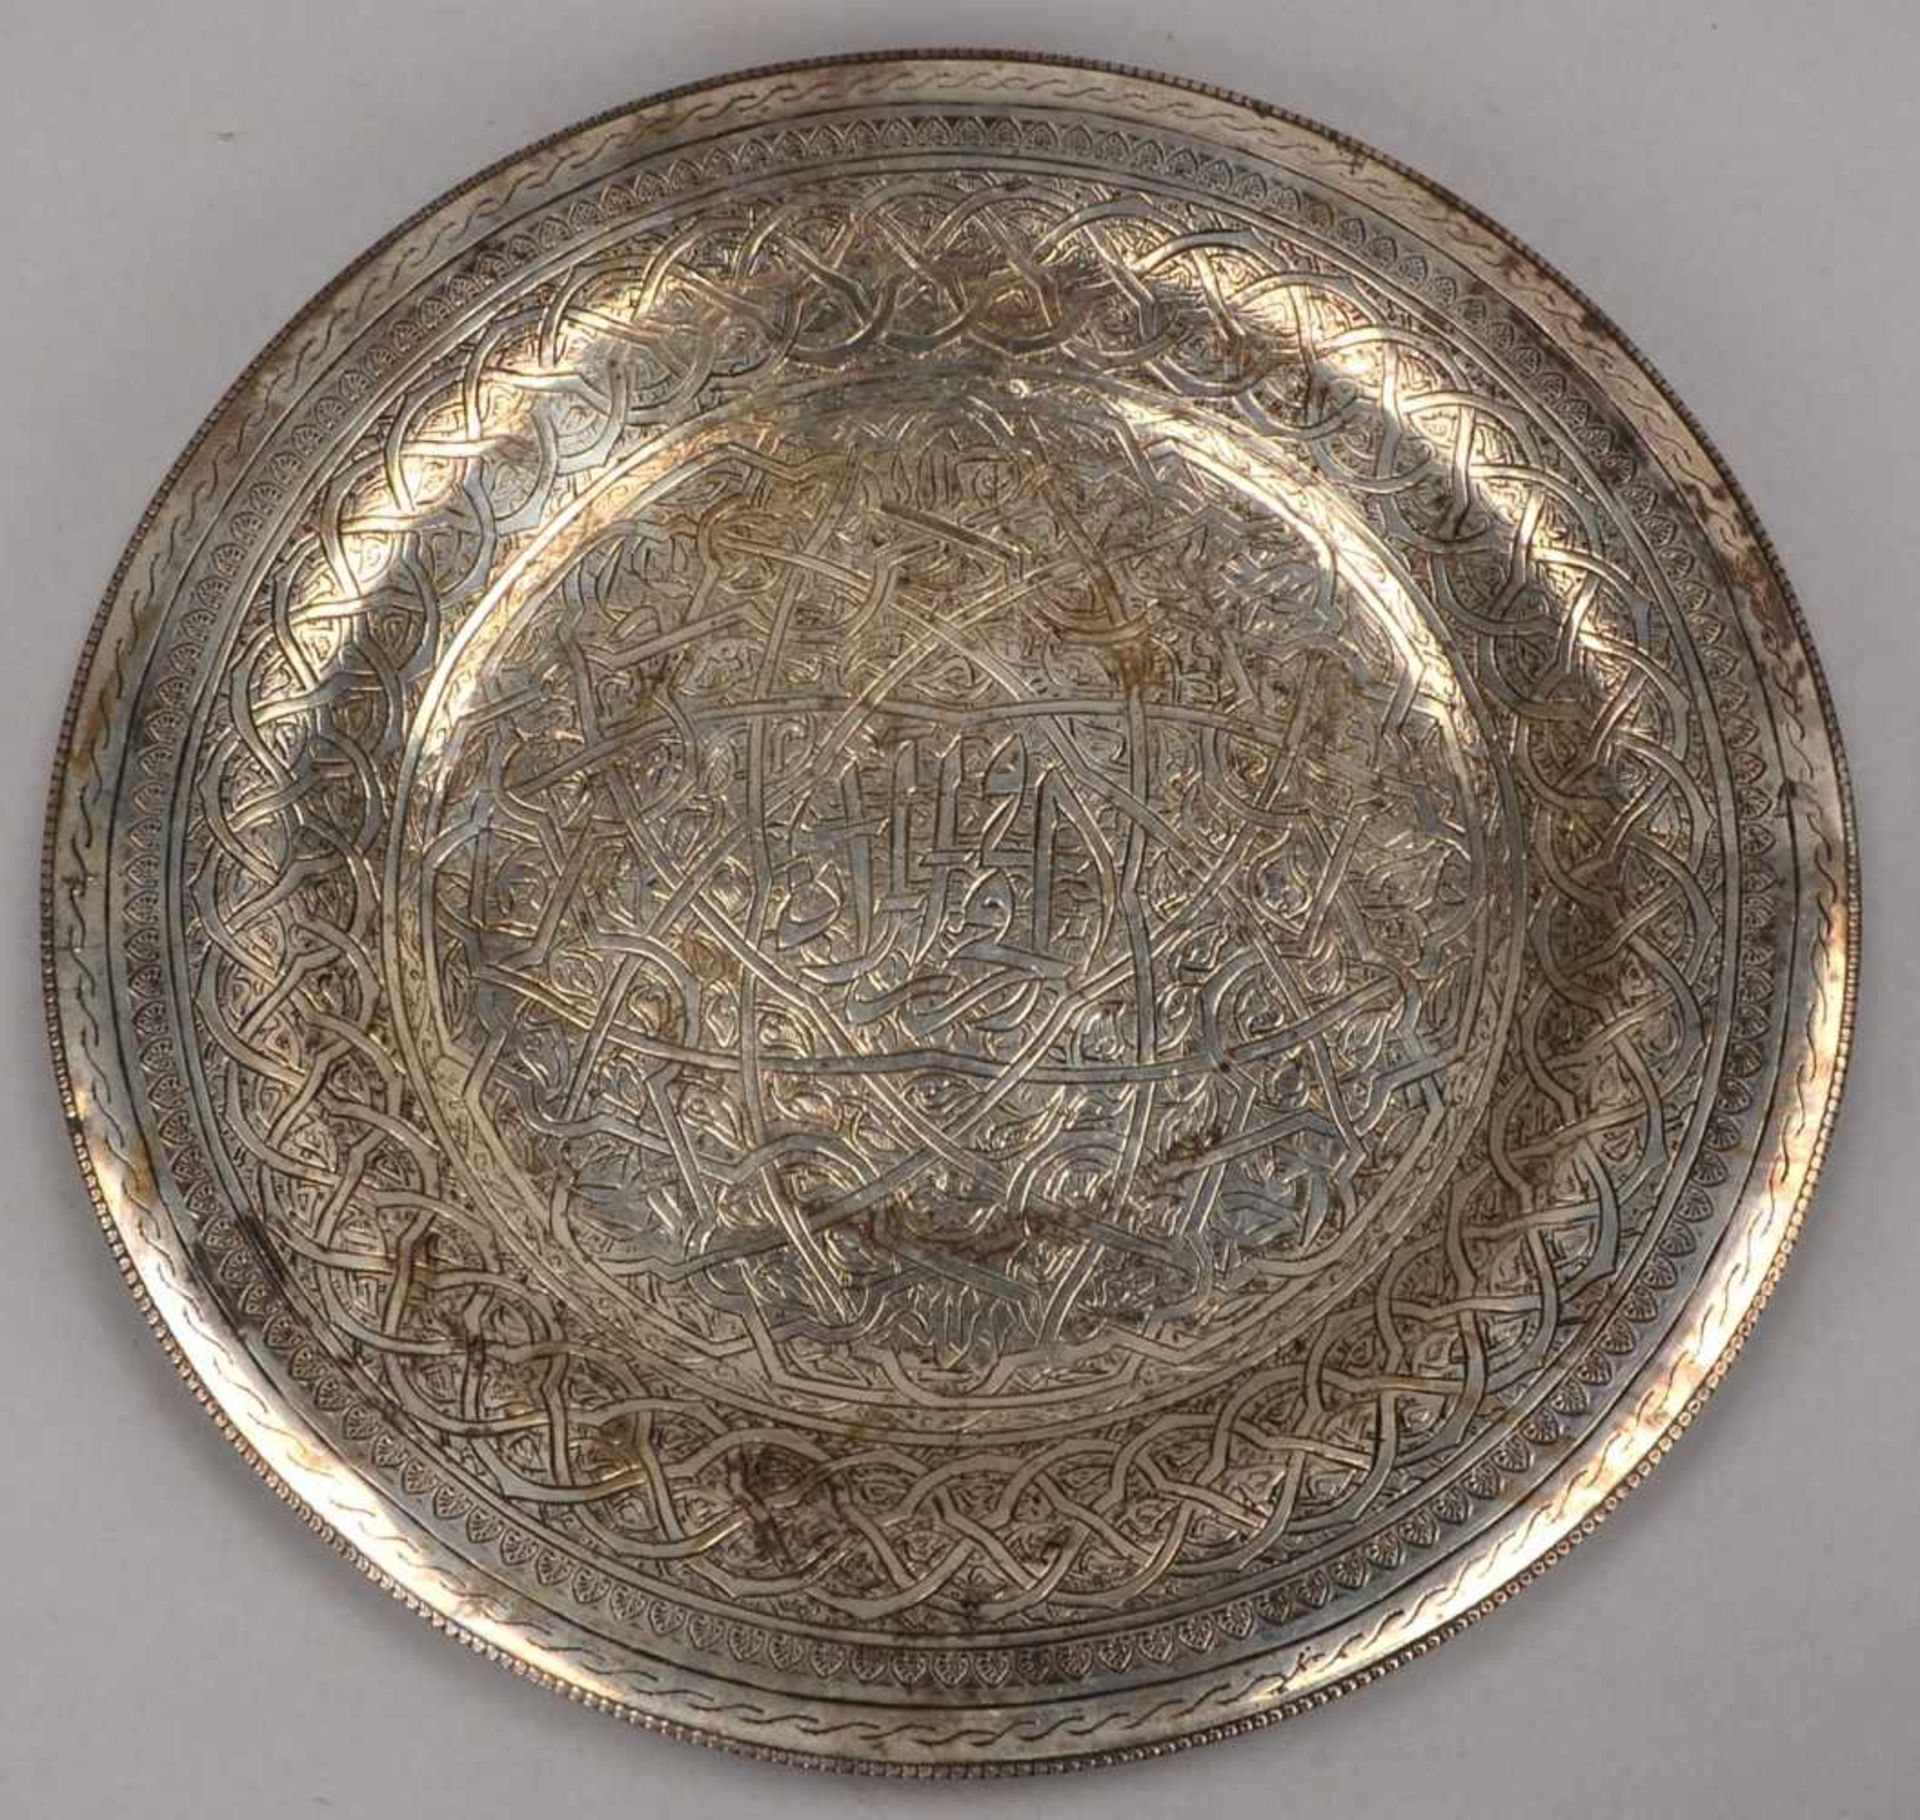 Silberschale (wohl Persien), alt, Spiegel mit feinen Handgravuren, verso 3-fach punziert; - Bild 2 aus 2